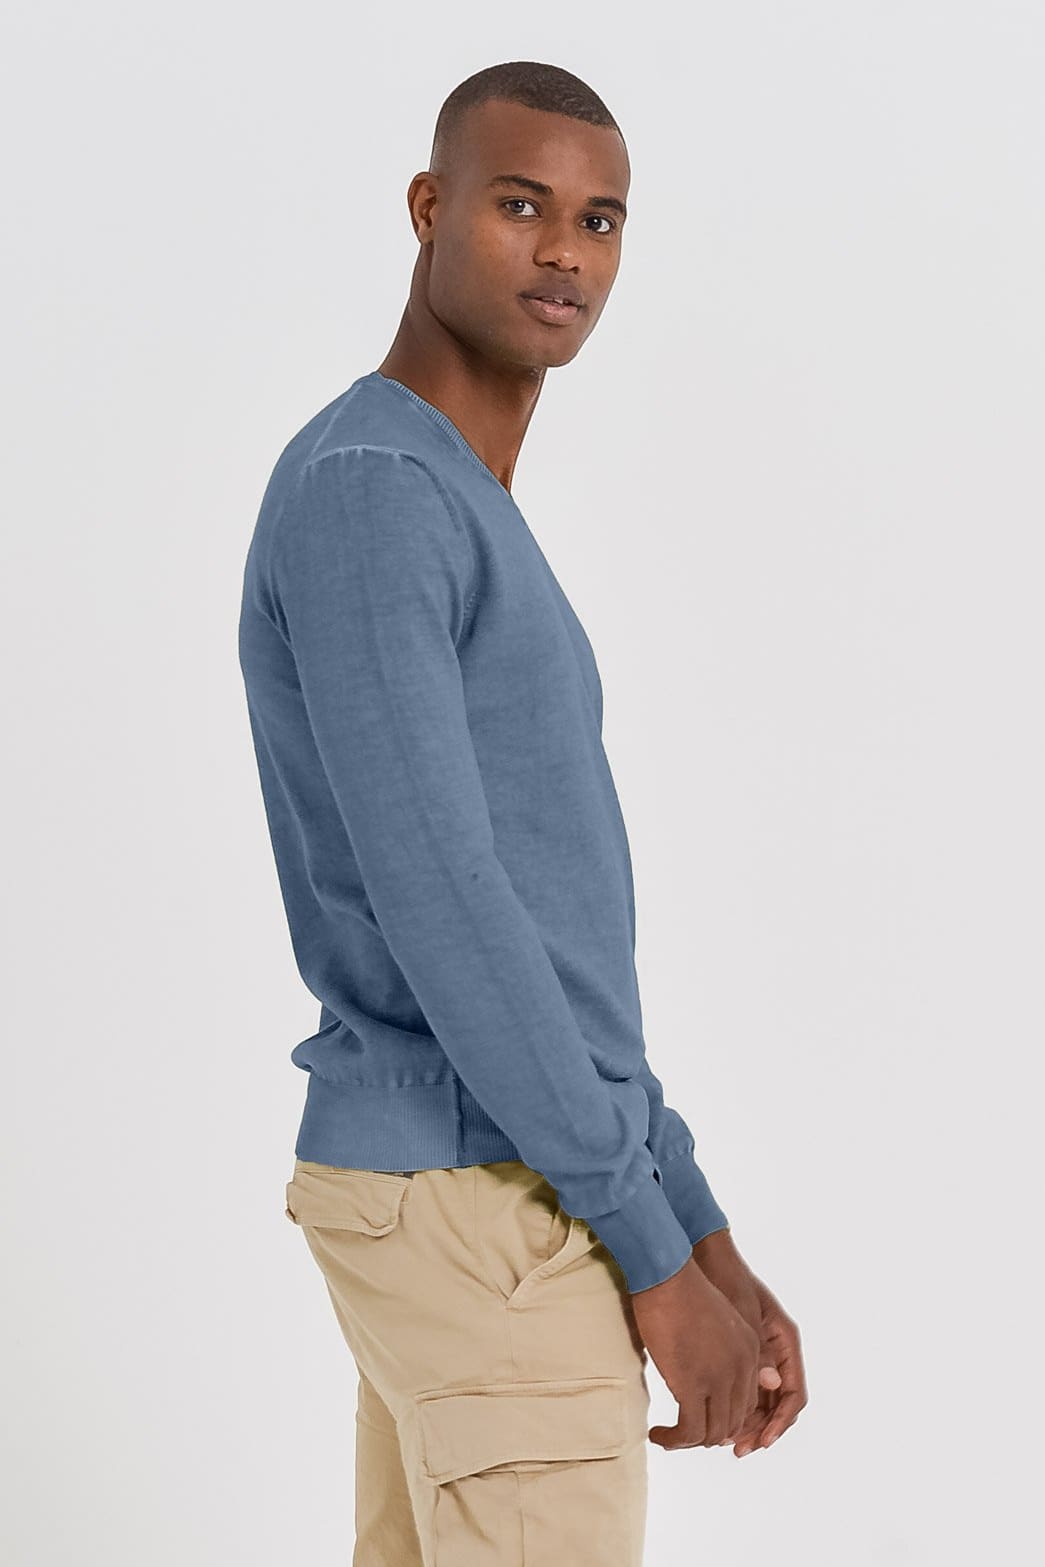 Ondartet kontakt Økologi Men's Cotton V-Neck Sweater in Jeans | Ploumanac'h